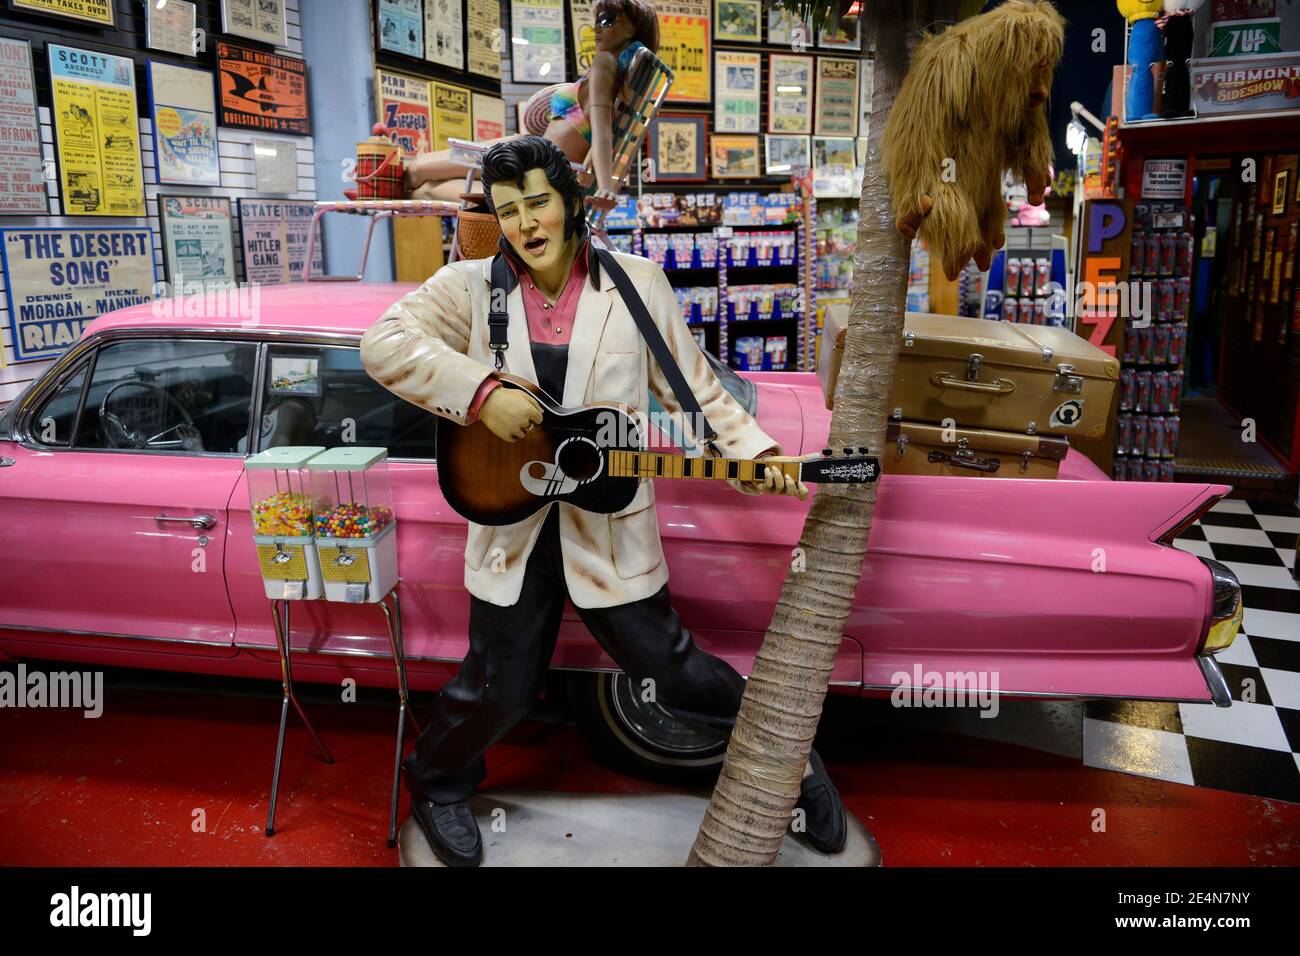 USA, Nebraska, Omaha, Elvis Presley poupée et vieille voiture Cadillac dans la boutique de souvenirs / Elvis Presley Figur und Alter GM General Motors Cadillac dans einem souvenir Laden Banque D'Images